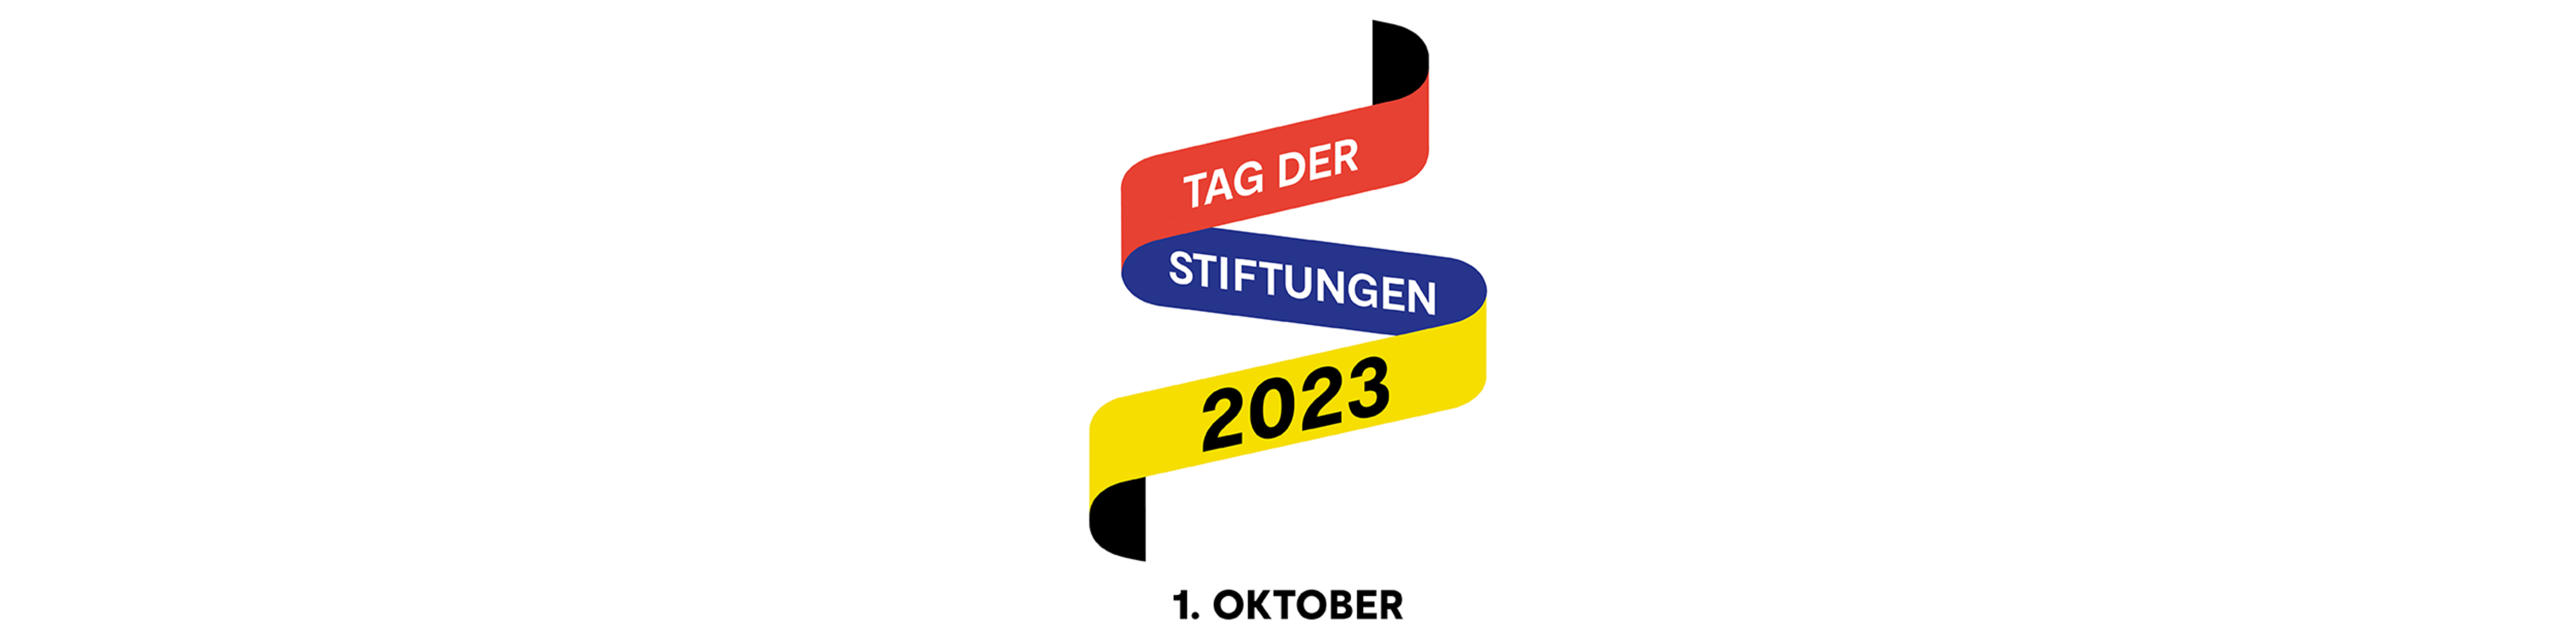 Logo vom Tag der Stiftungen 2023 | © Bundesverband Deutscher Stiftungen